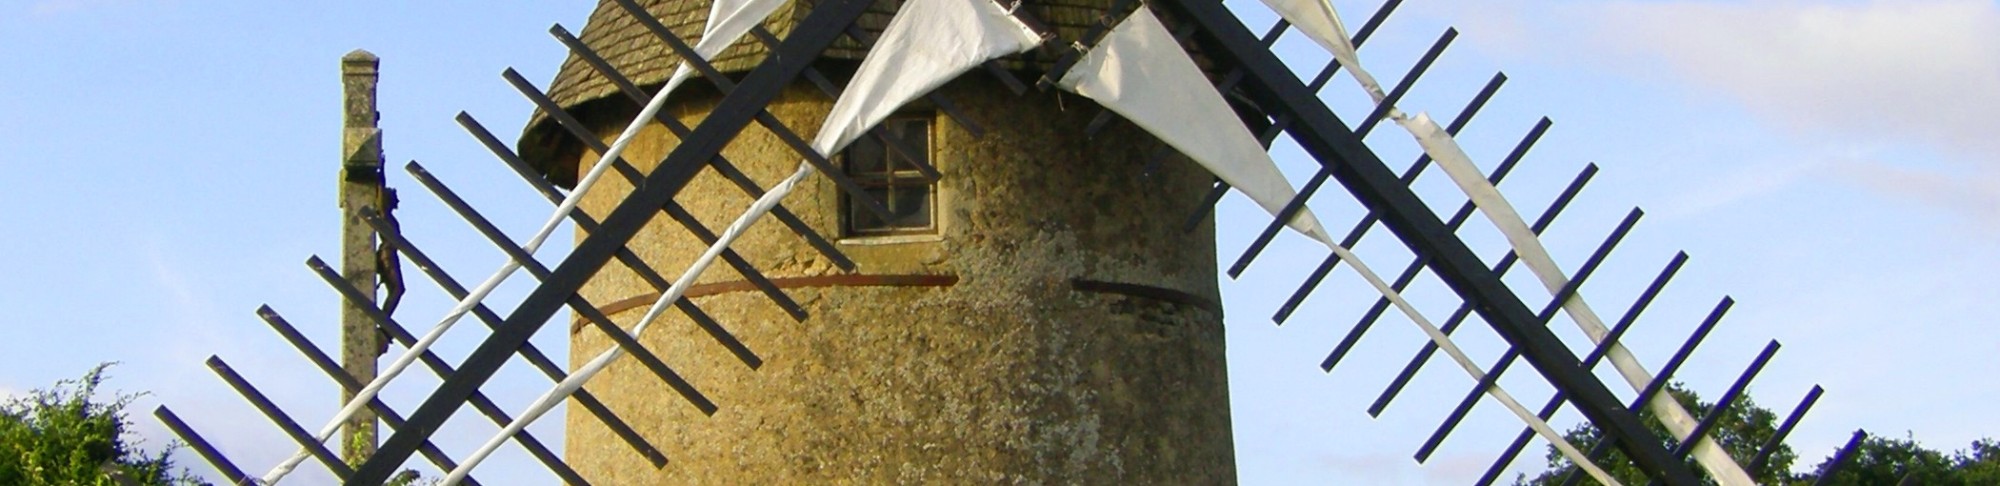 La Croix des Fontenelles - Alouettes Windmills